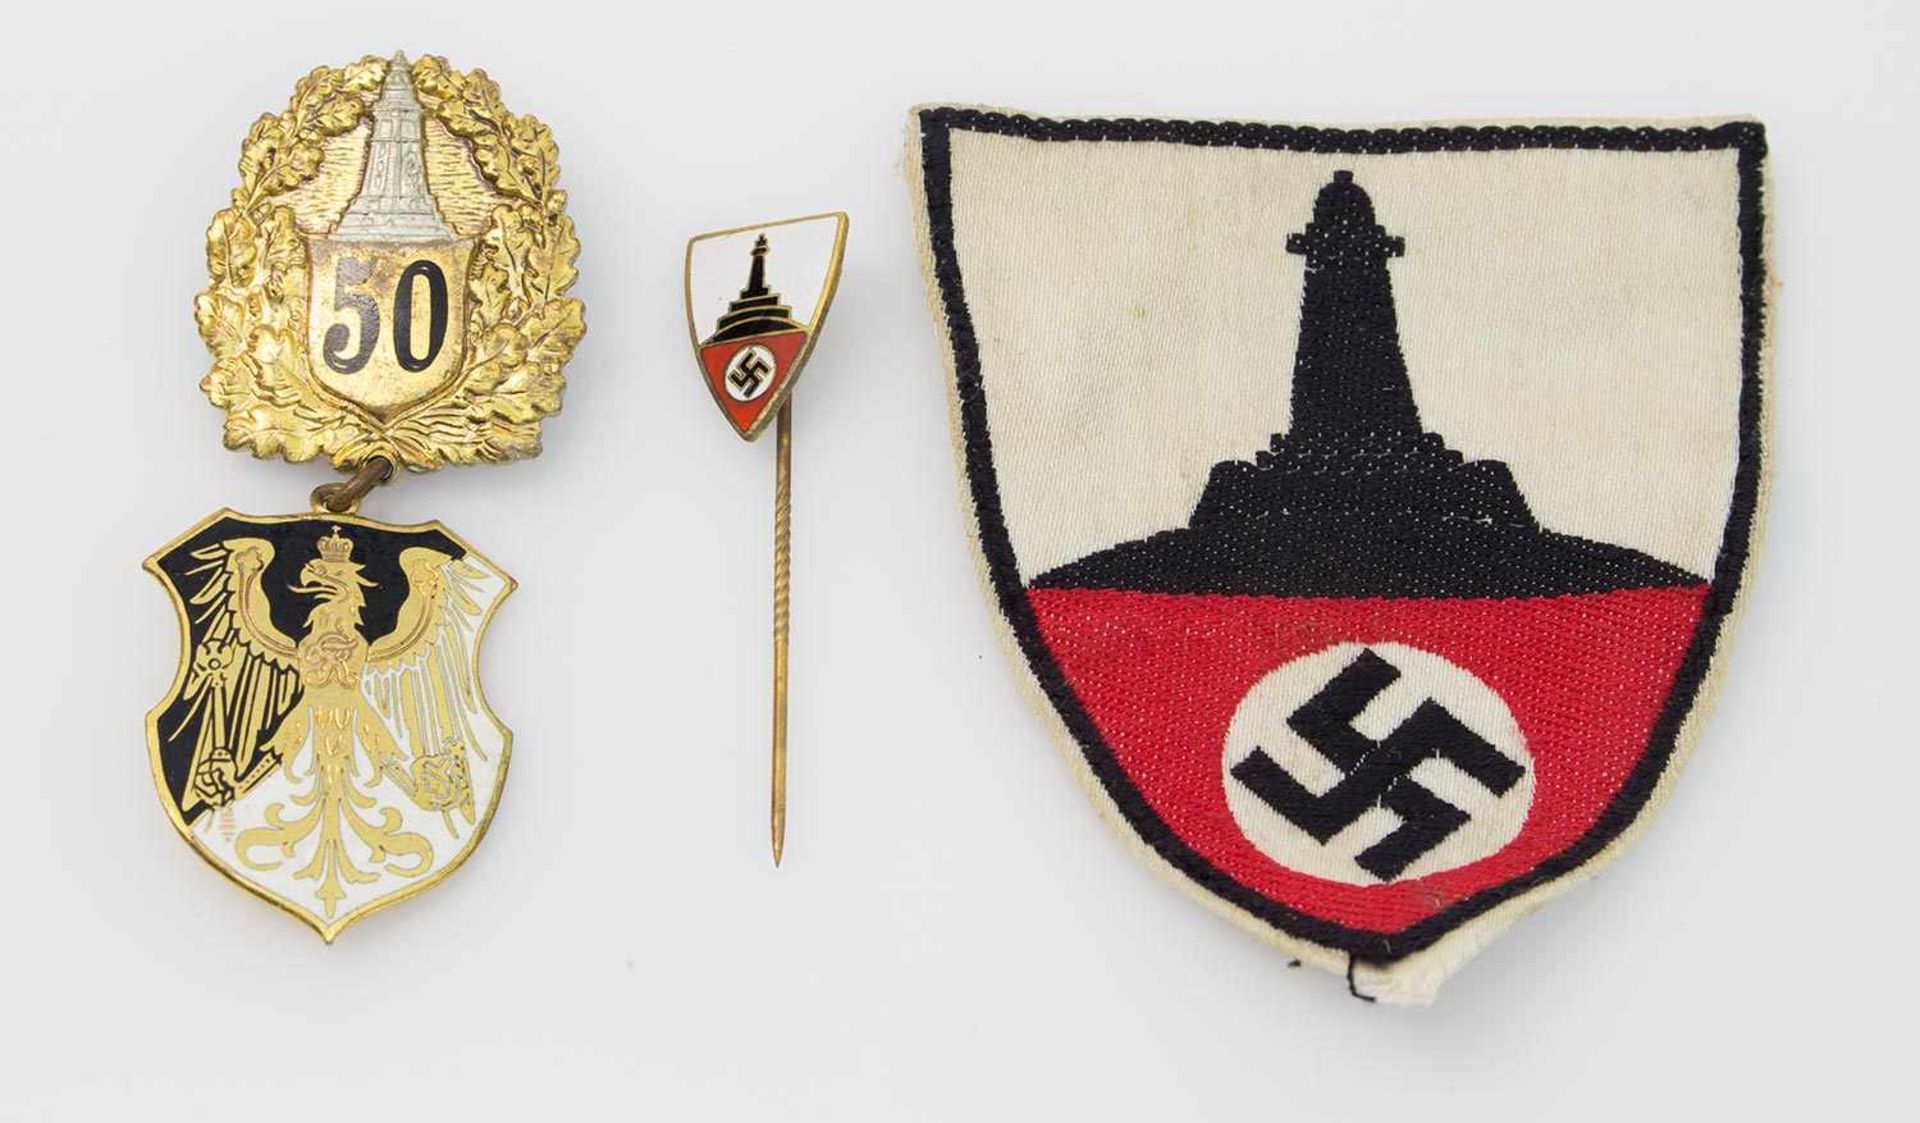 Lot Preussischer Landes-Kriegerverband, Mitgliedsnadel und Ärmelabzeichen (Stoff, gewebt), Abzeichen